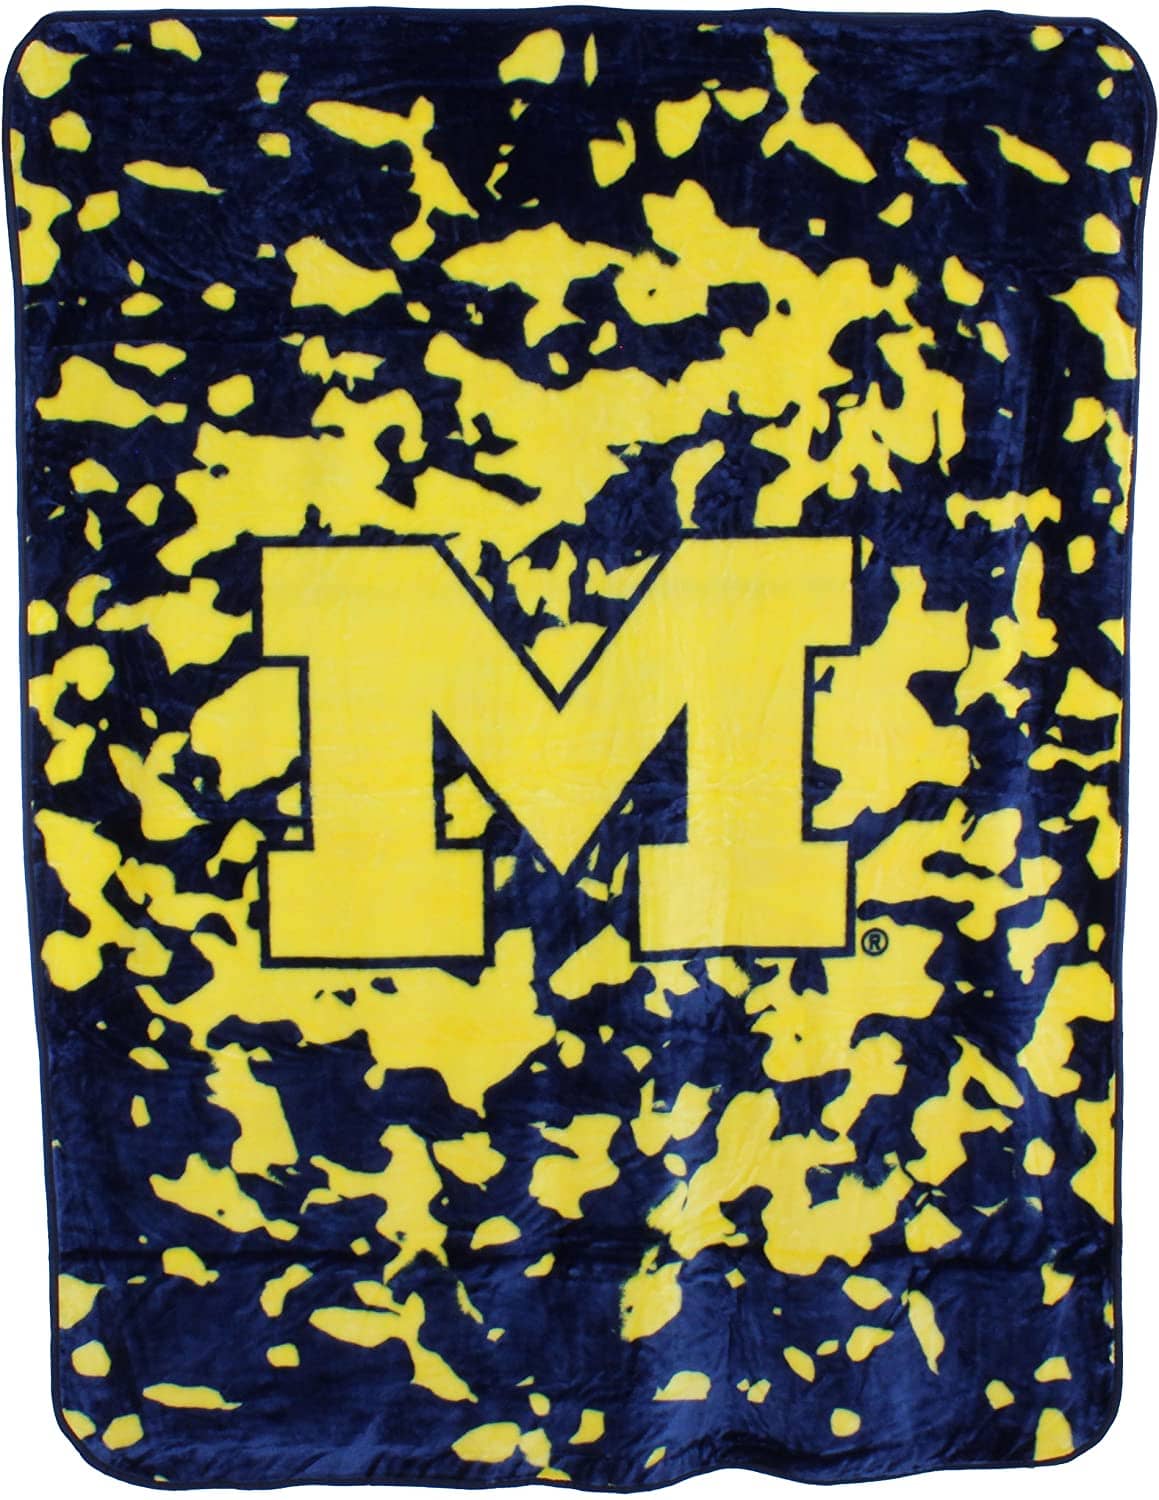 Ncaa Throw Blanket Michigan Wolverines Fleece Blanket